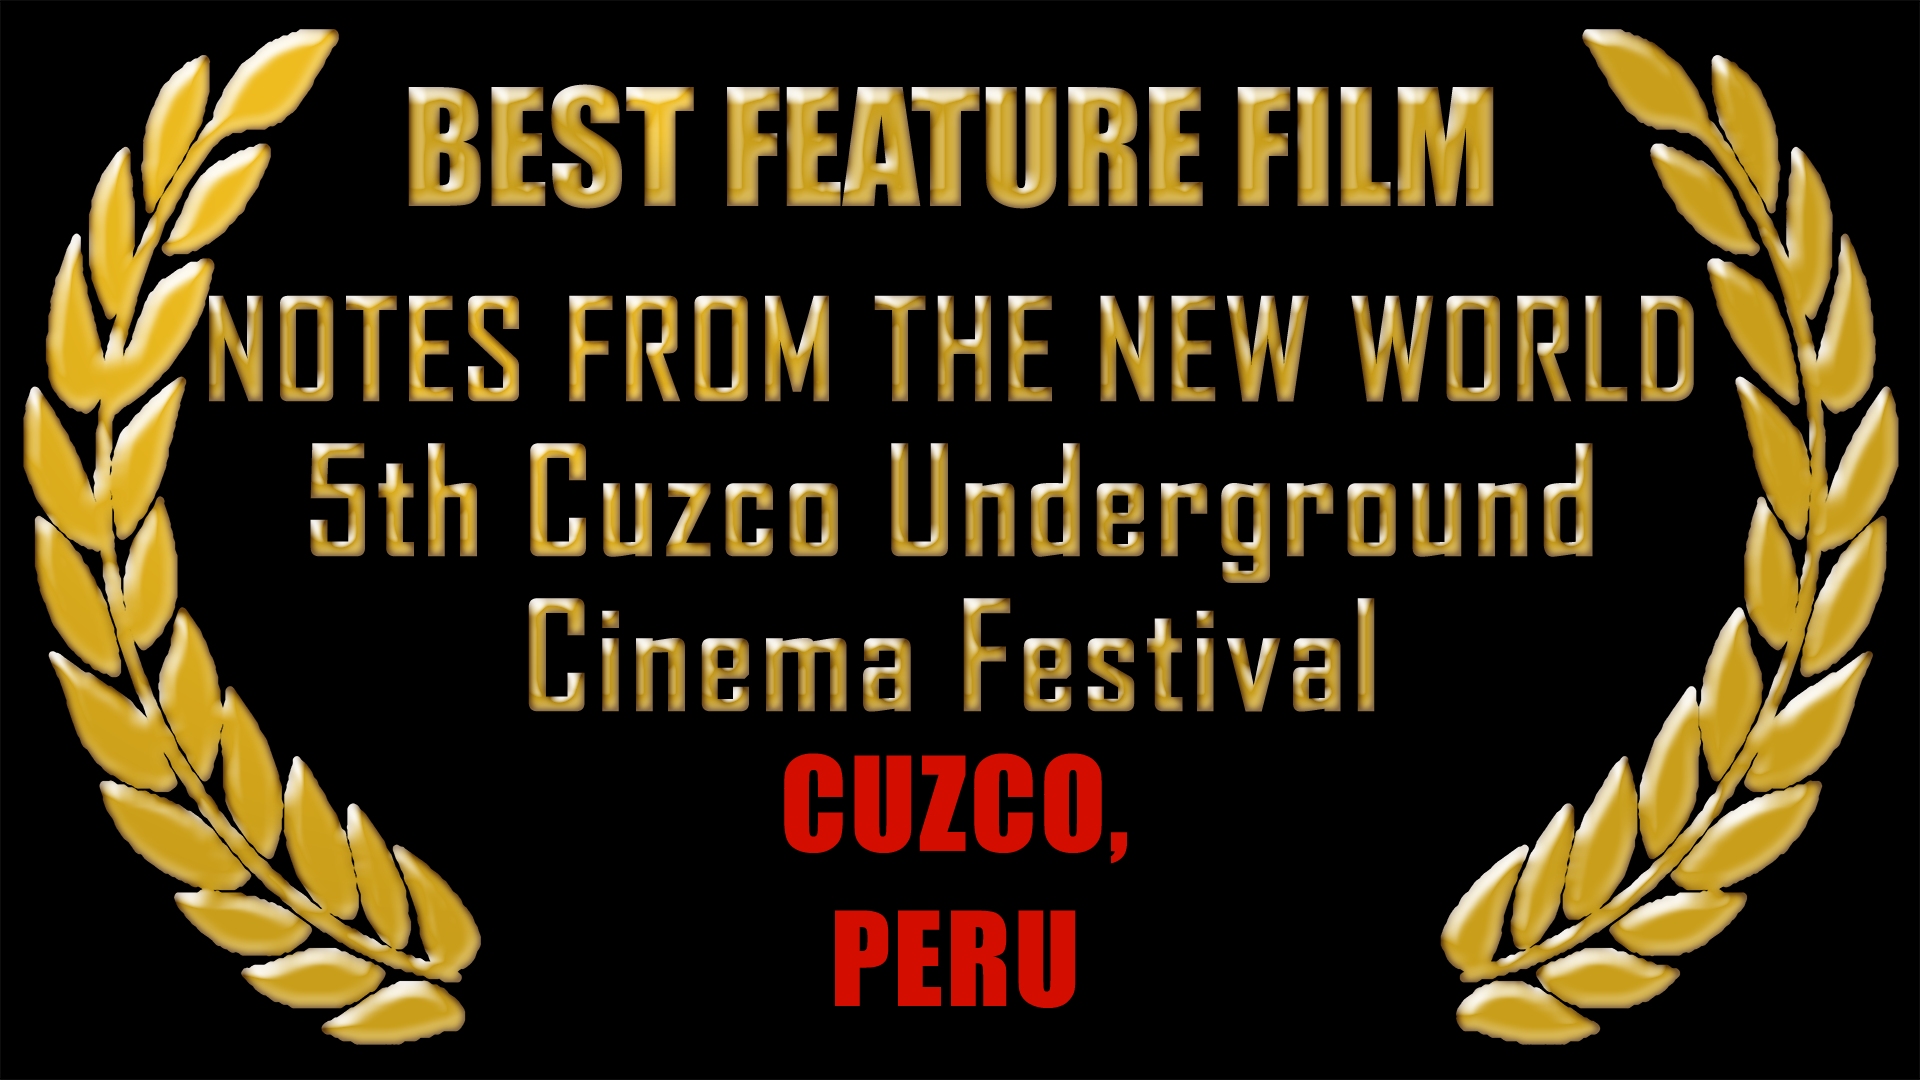 Best Feature Film, Cuzco - Peru